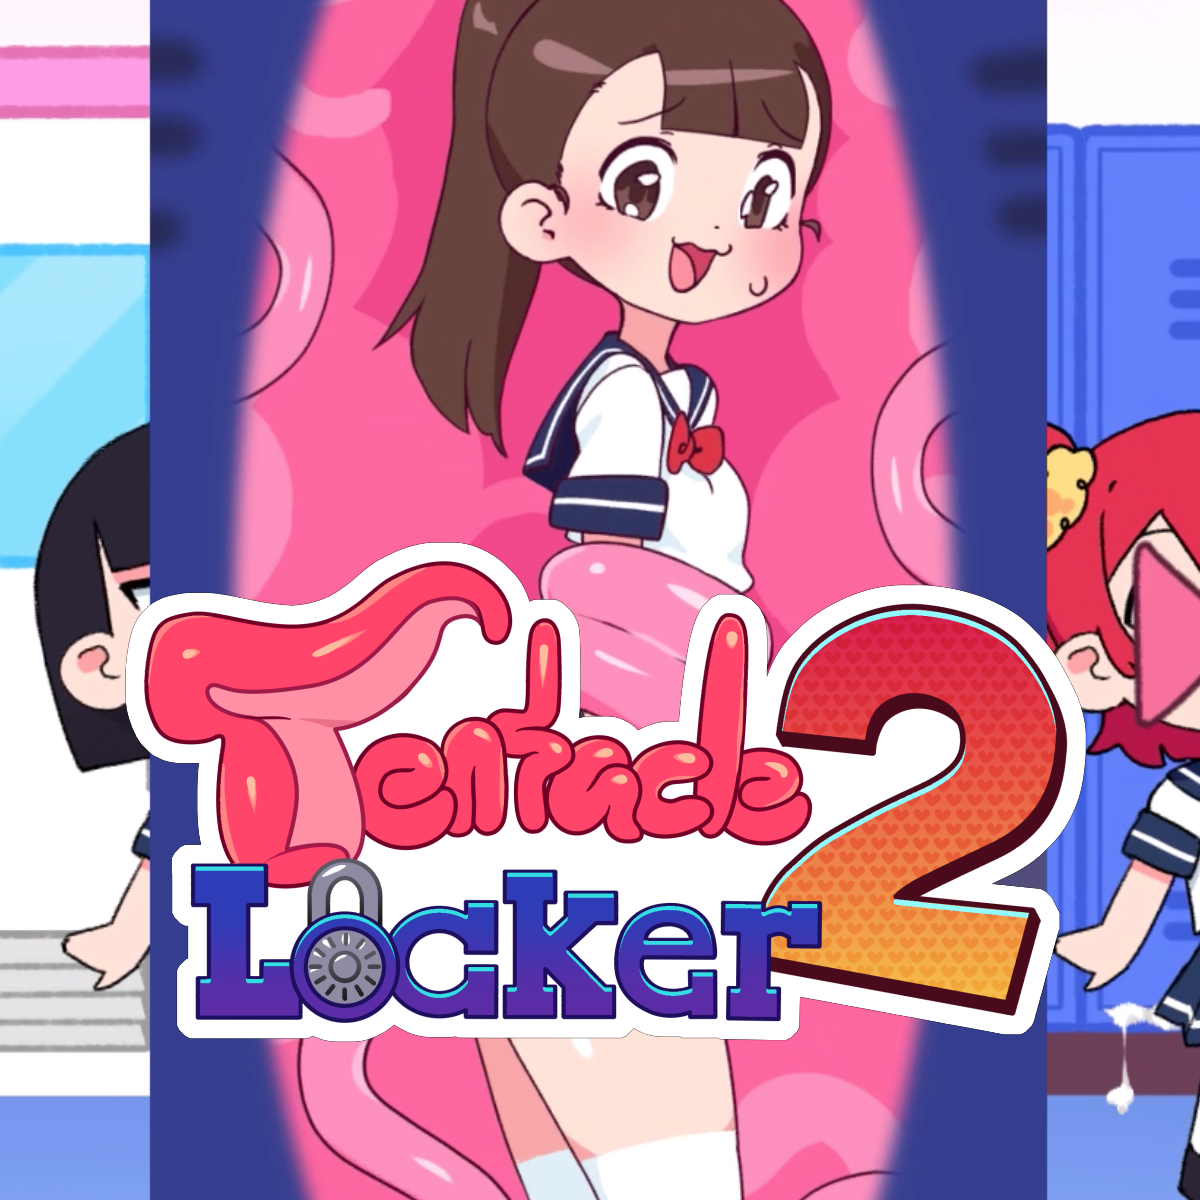 Tentacle locker 2 pool update. Tentacle Locker. Tentacle Locker 2. Tentacle игра. Игра тентакли Locker.